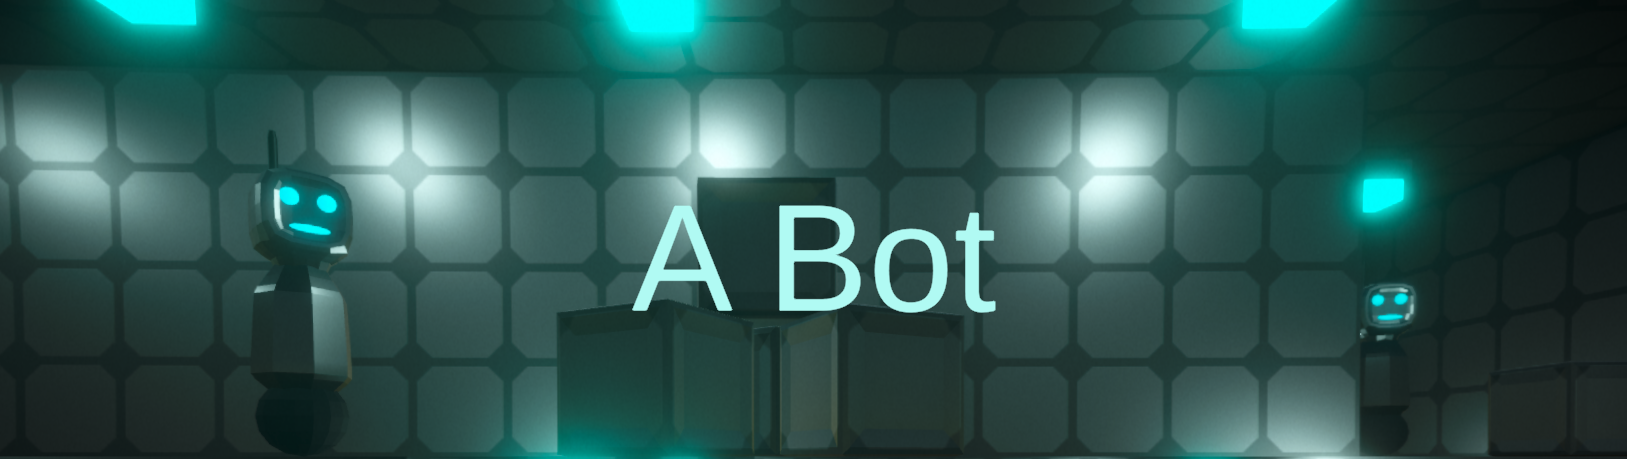 A Bot